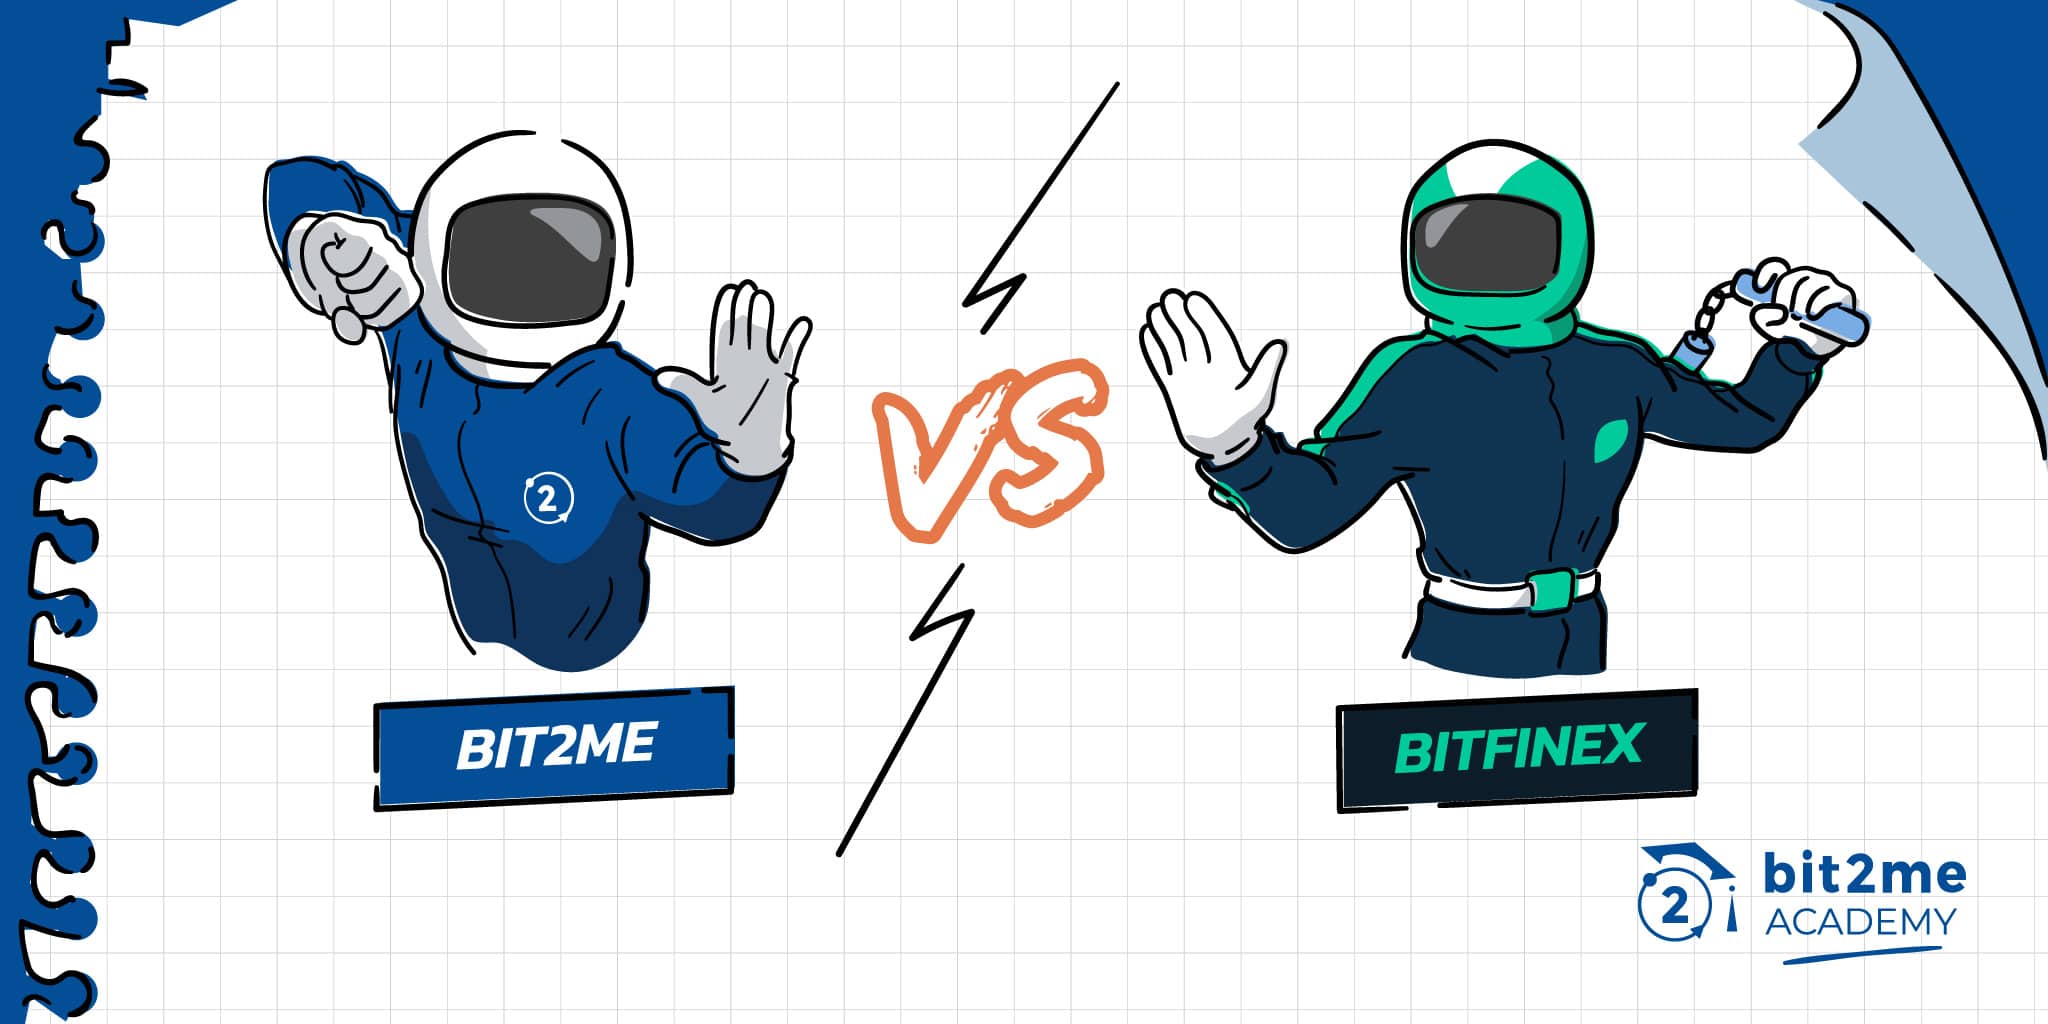 Comparaison détaillée entre Bit2Me et Bitfinex